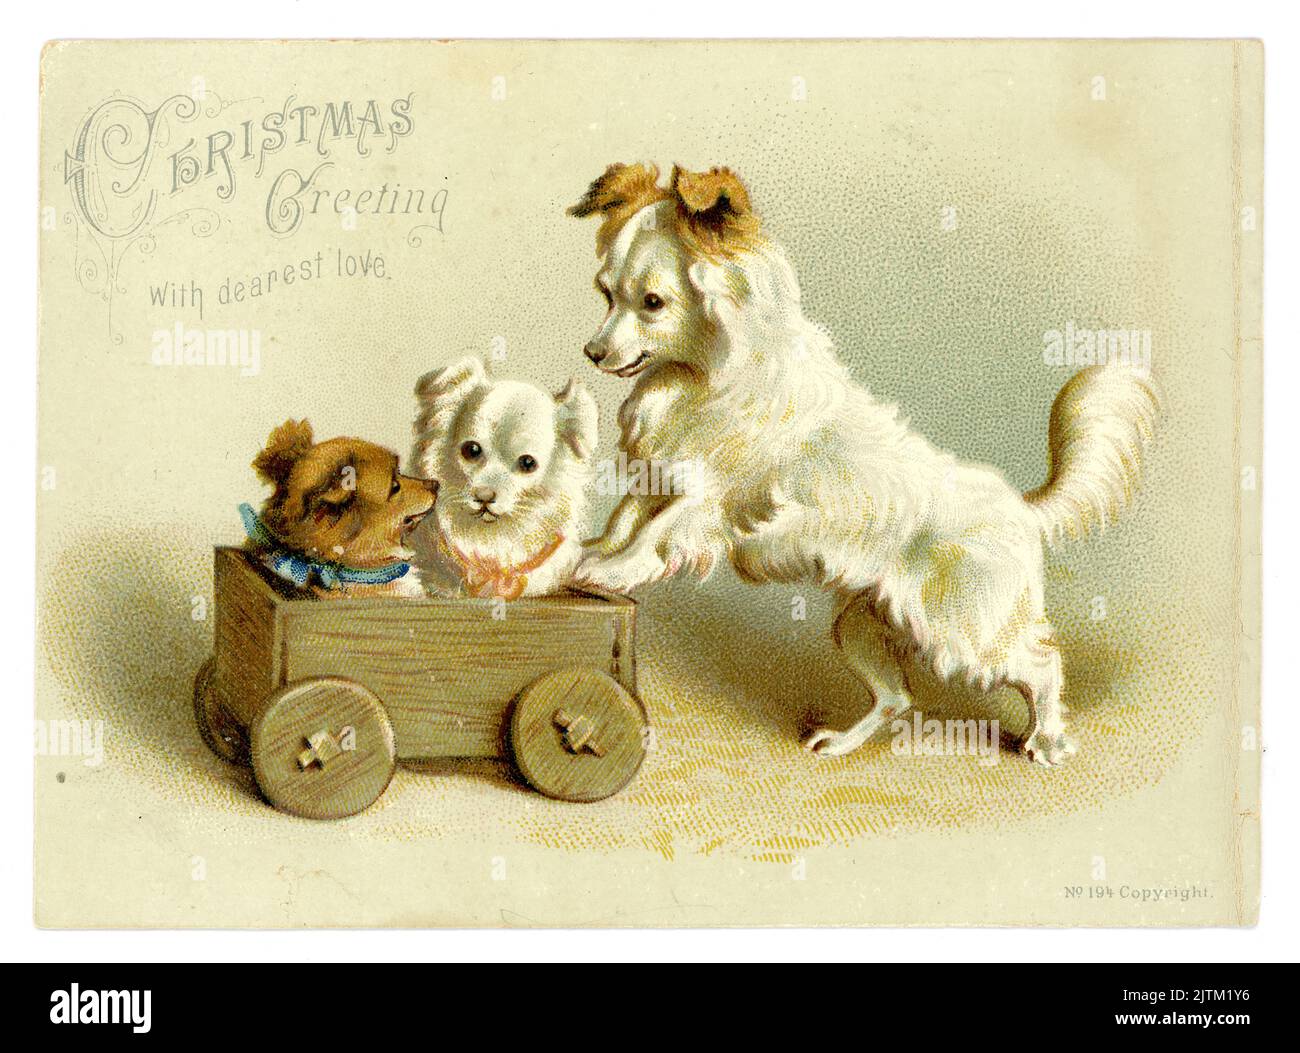 Original, charmante carte de Noël victorienne, carte de voeux de chien terrier mignon poussant deux chiots dans un camion en bois jouet ou chariot, voeux de Noël avec l'amour le plus cher, vers 1890's, Royaume-Uni Banque D'Images